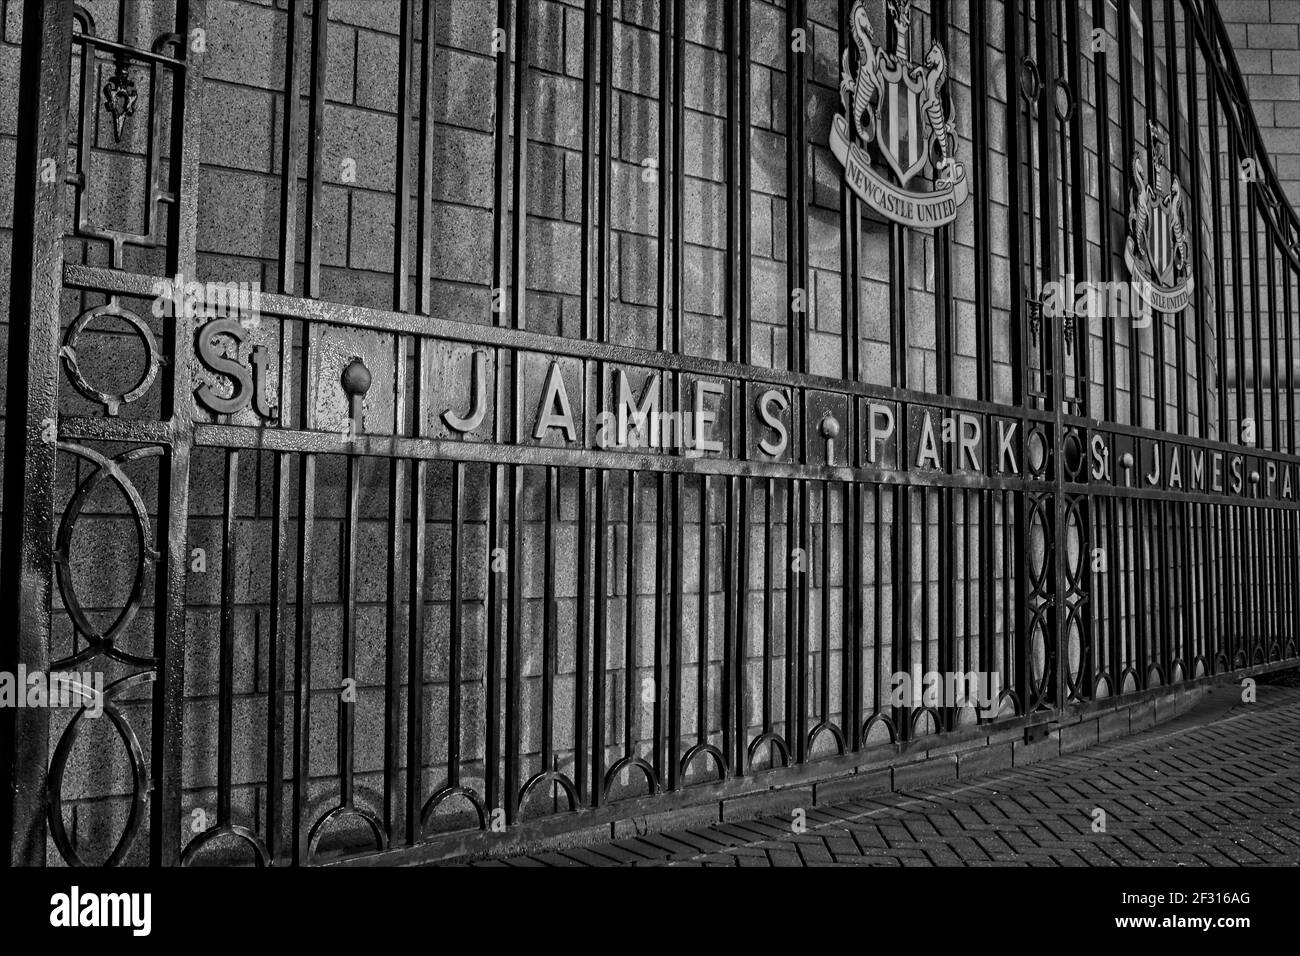 Les anciennes portes du stade de football de St James Park à Newcastle, Tyne et Wear. Stade du Newcastle United football Club... Banque D'Images